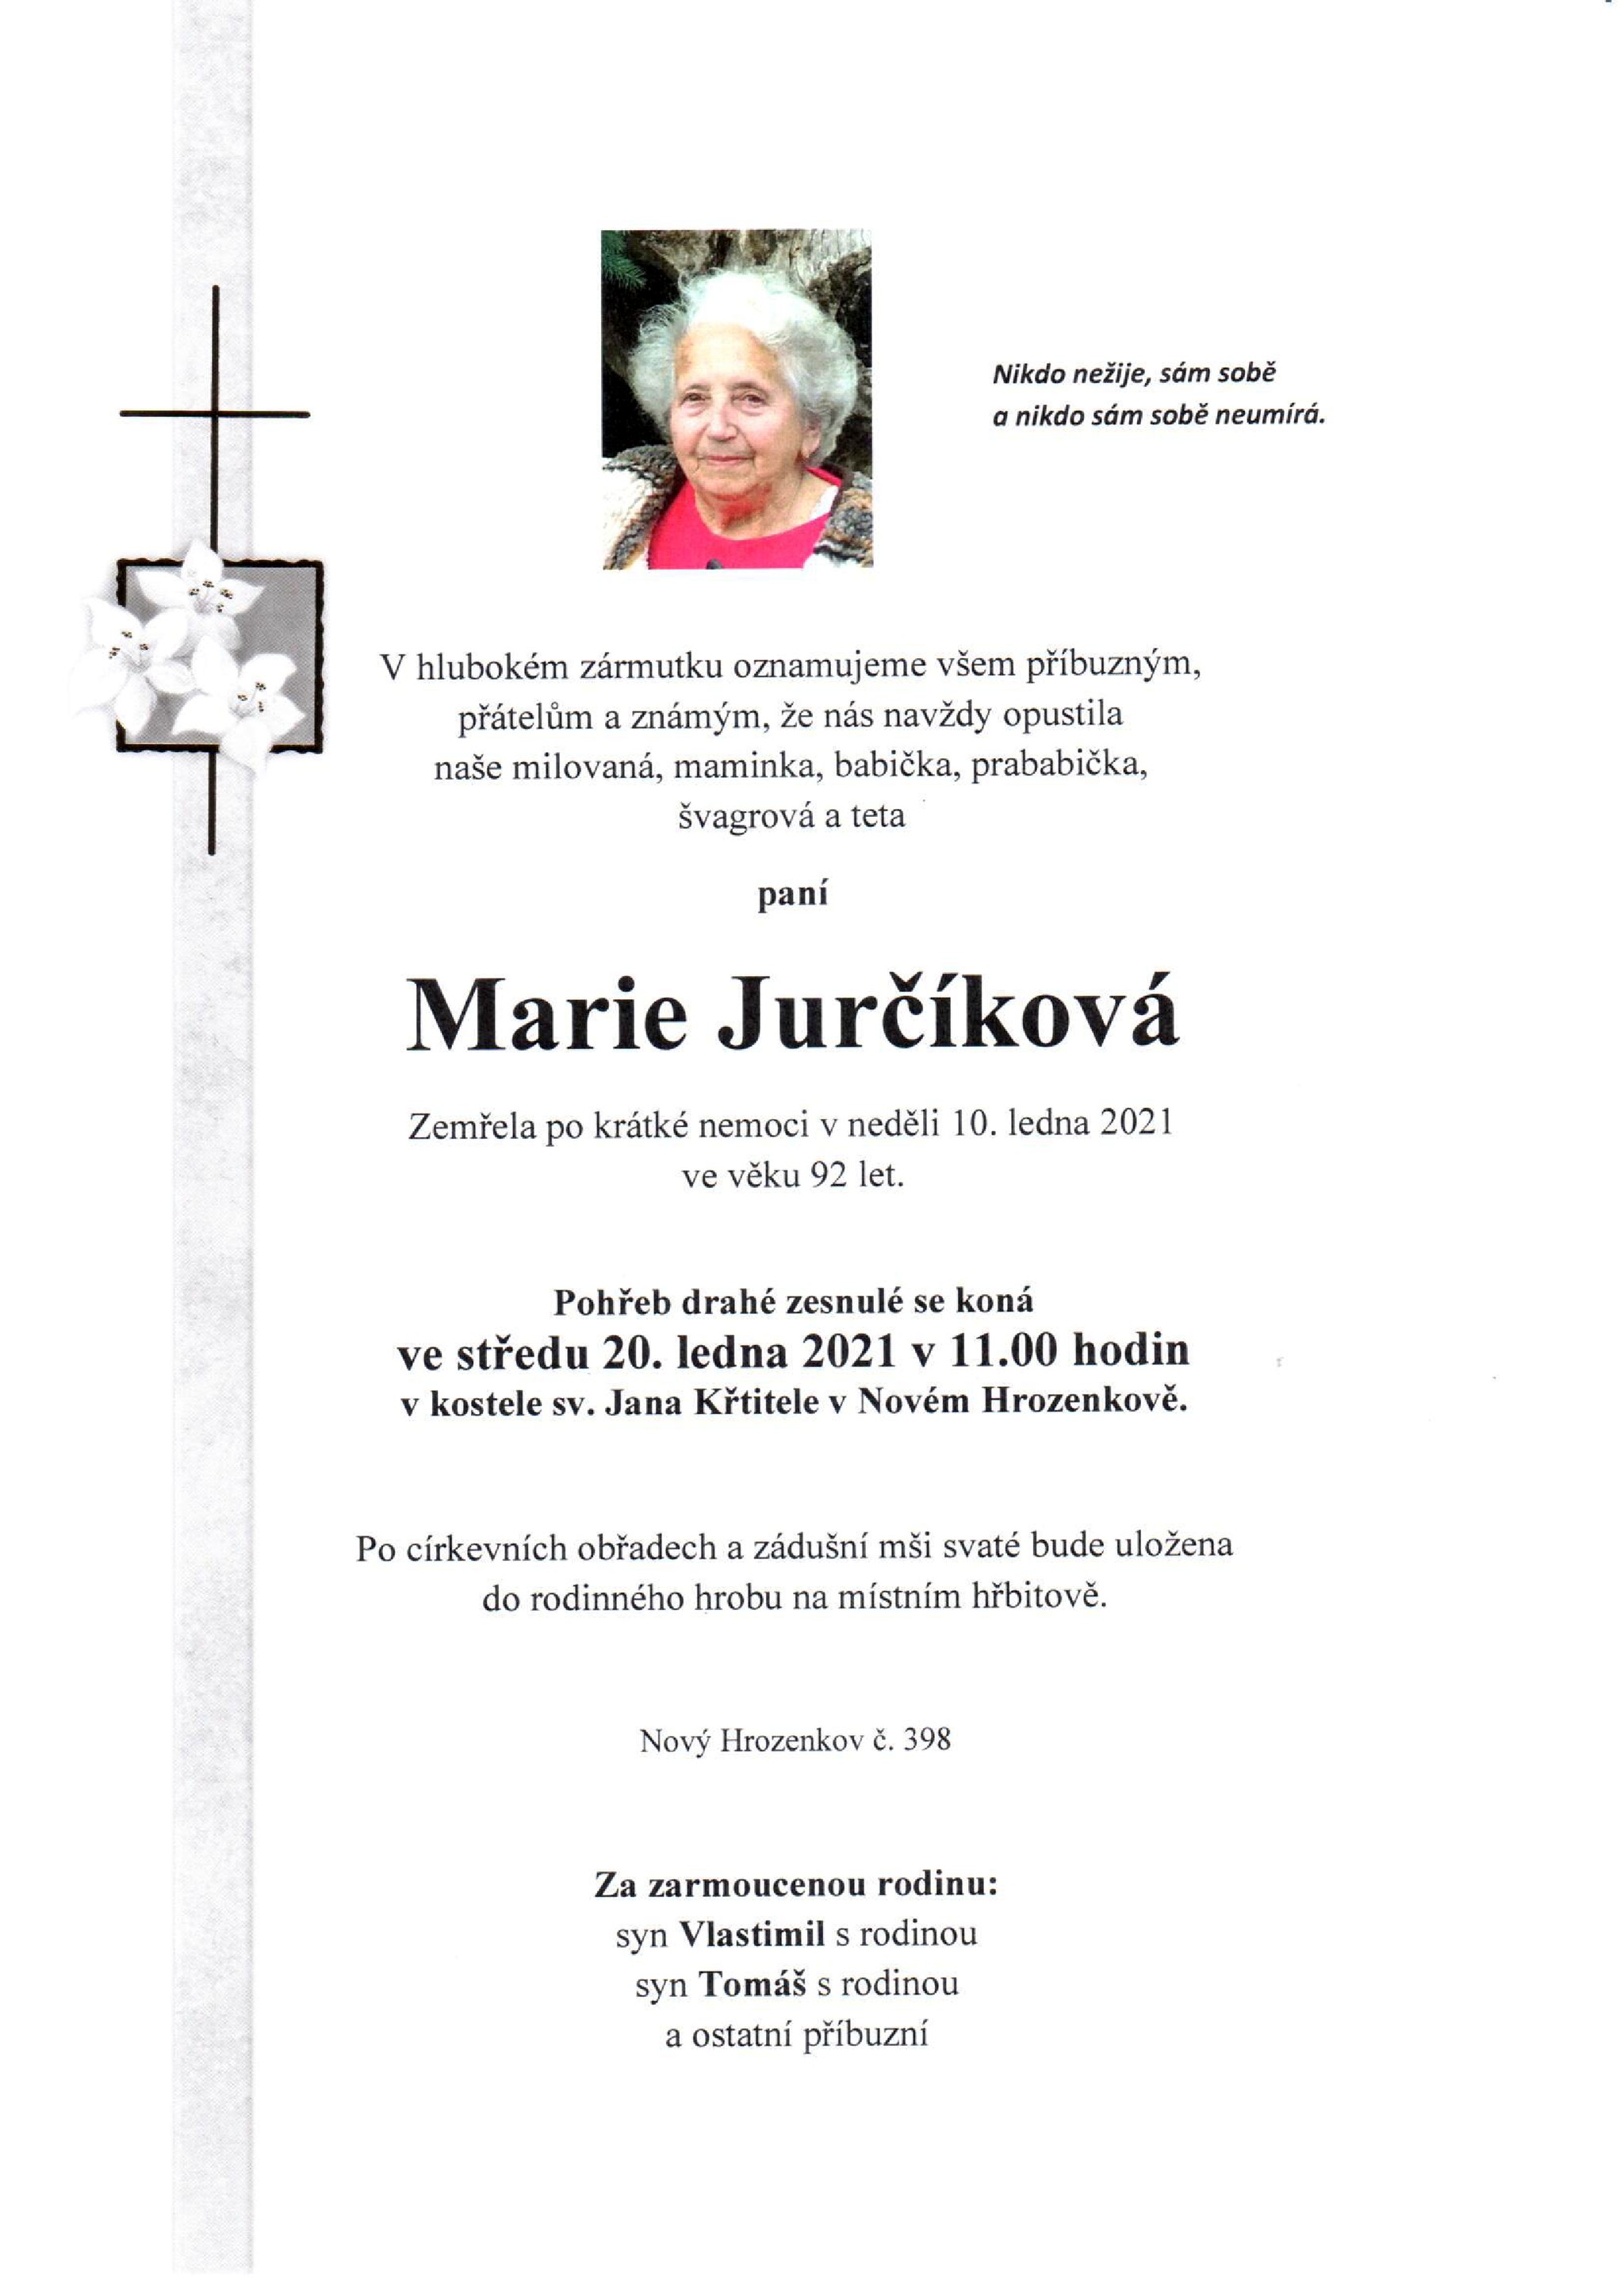 Marie Jurčíková